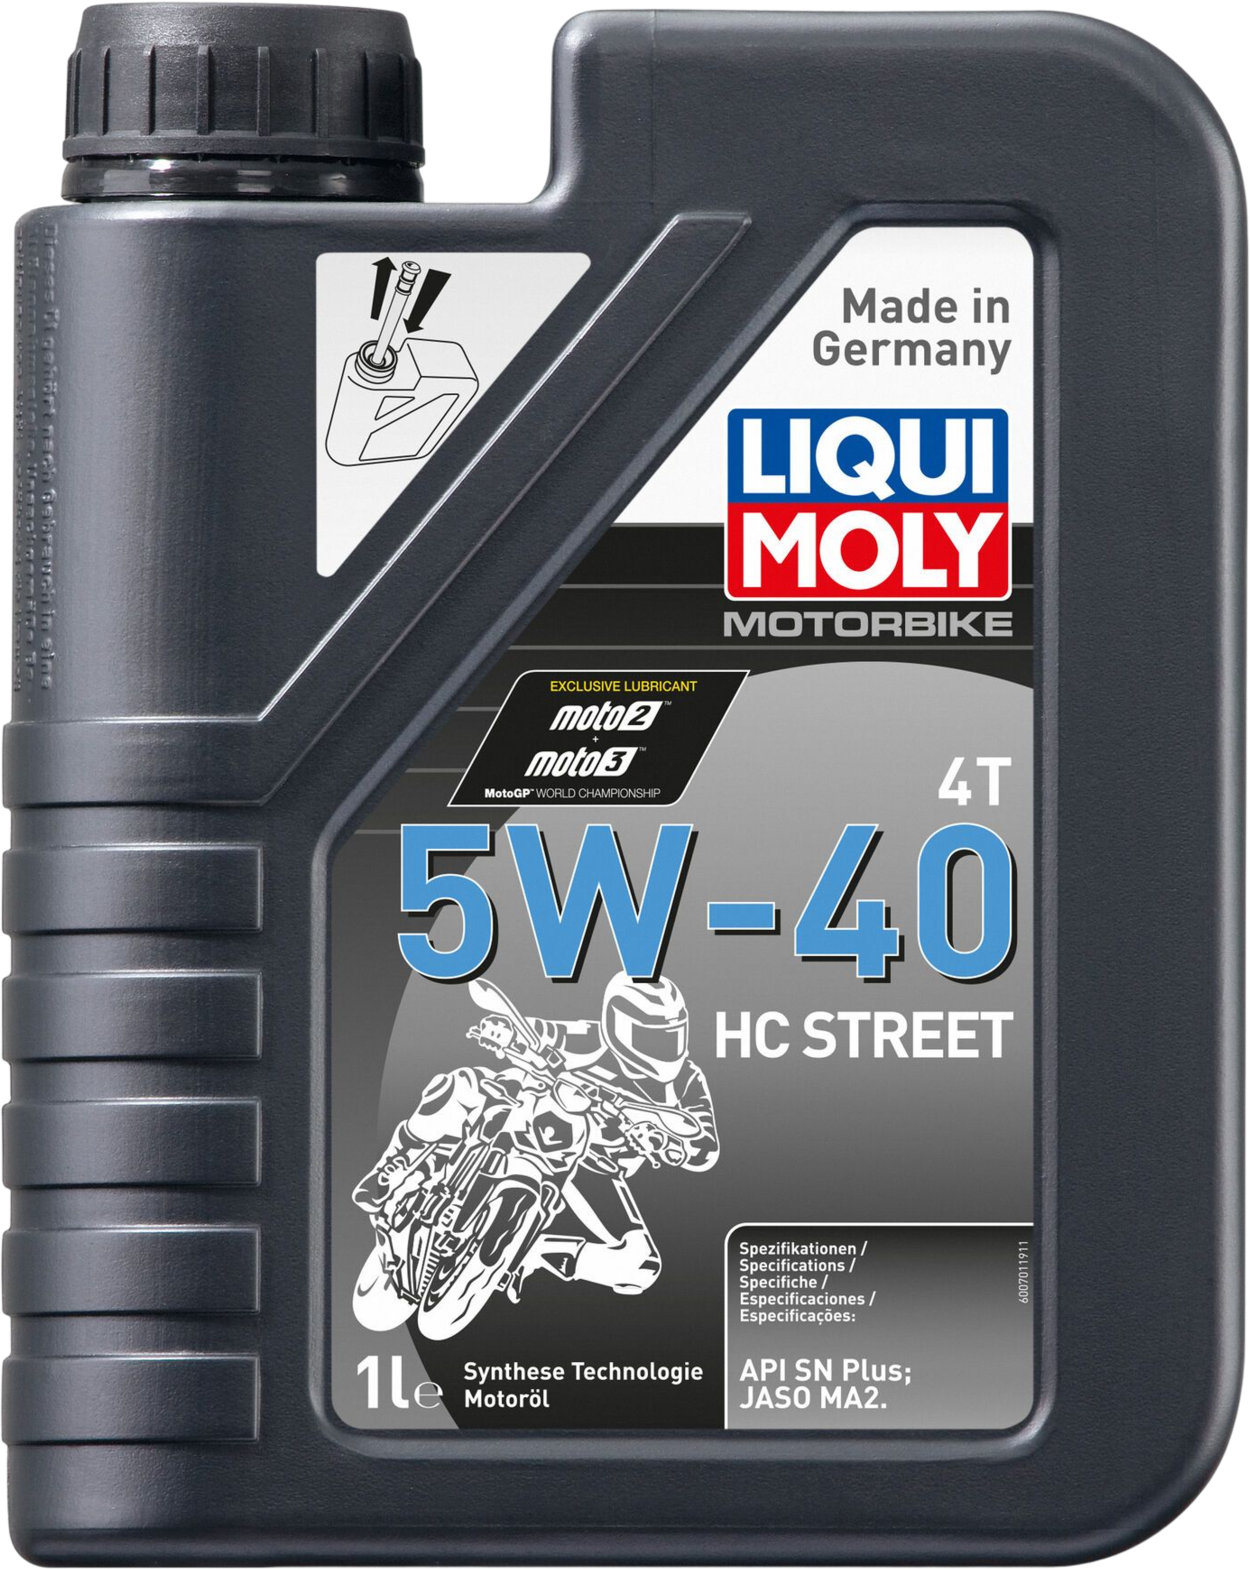 Liqui Moly Motorbike 4T 5W-40 HC Street, 1 lt